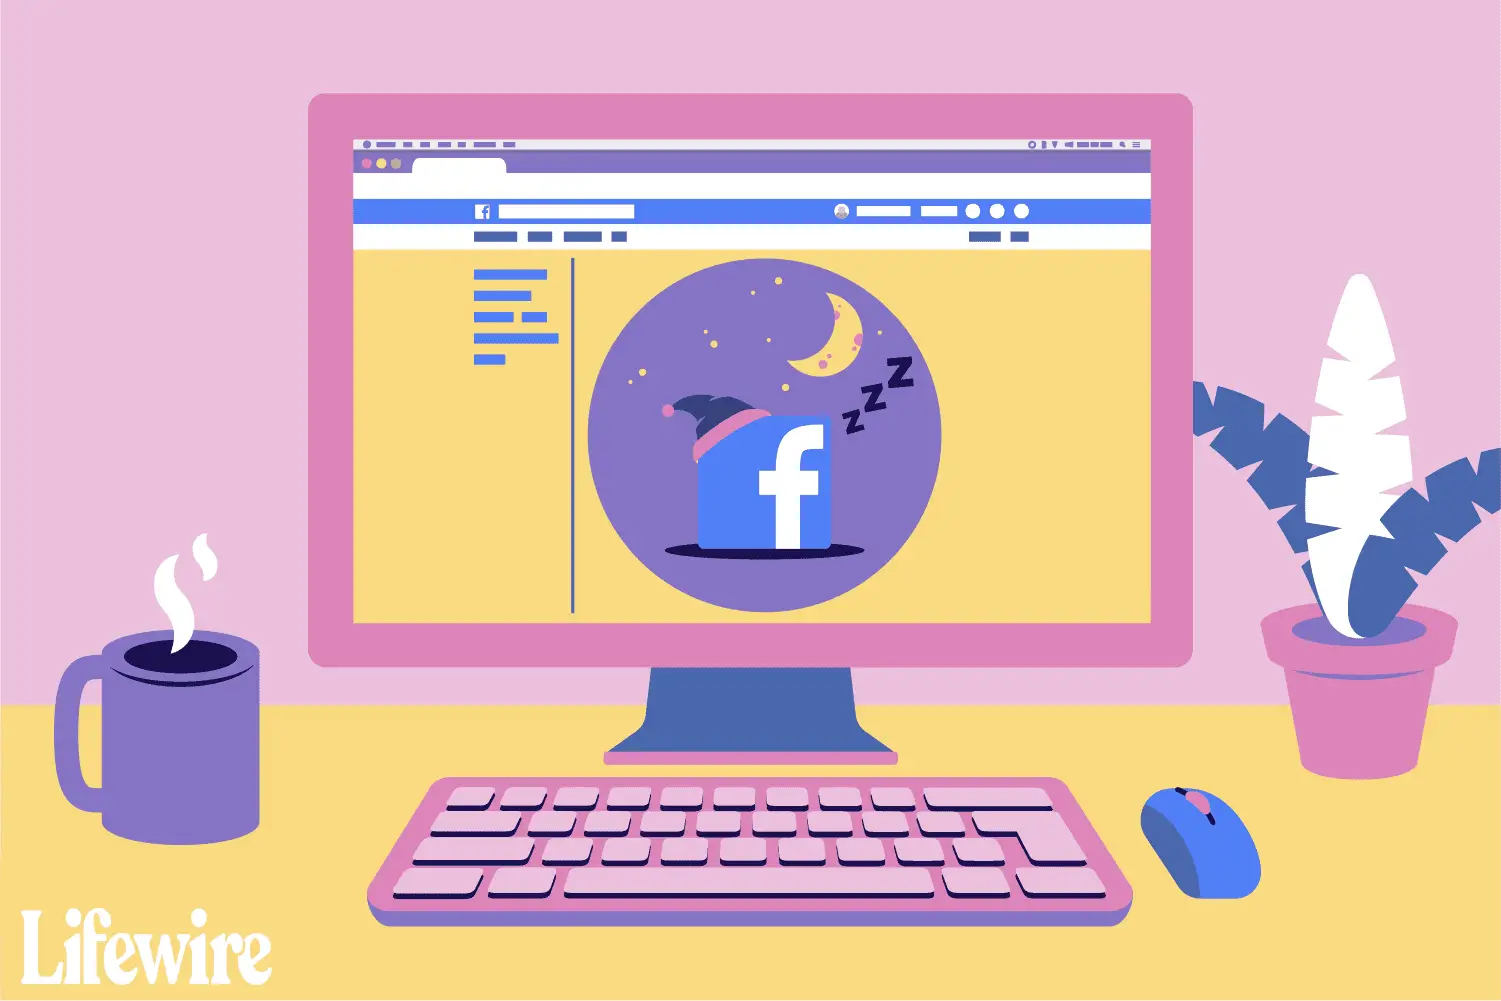 Uma ilustração de um computador com o Facebook na tela, cochilando.